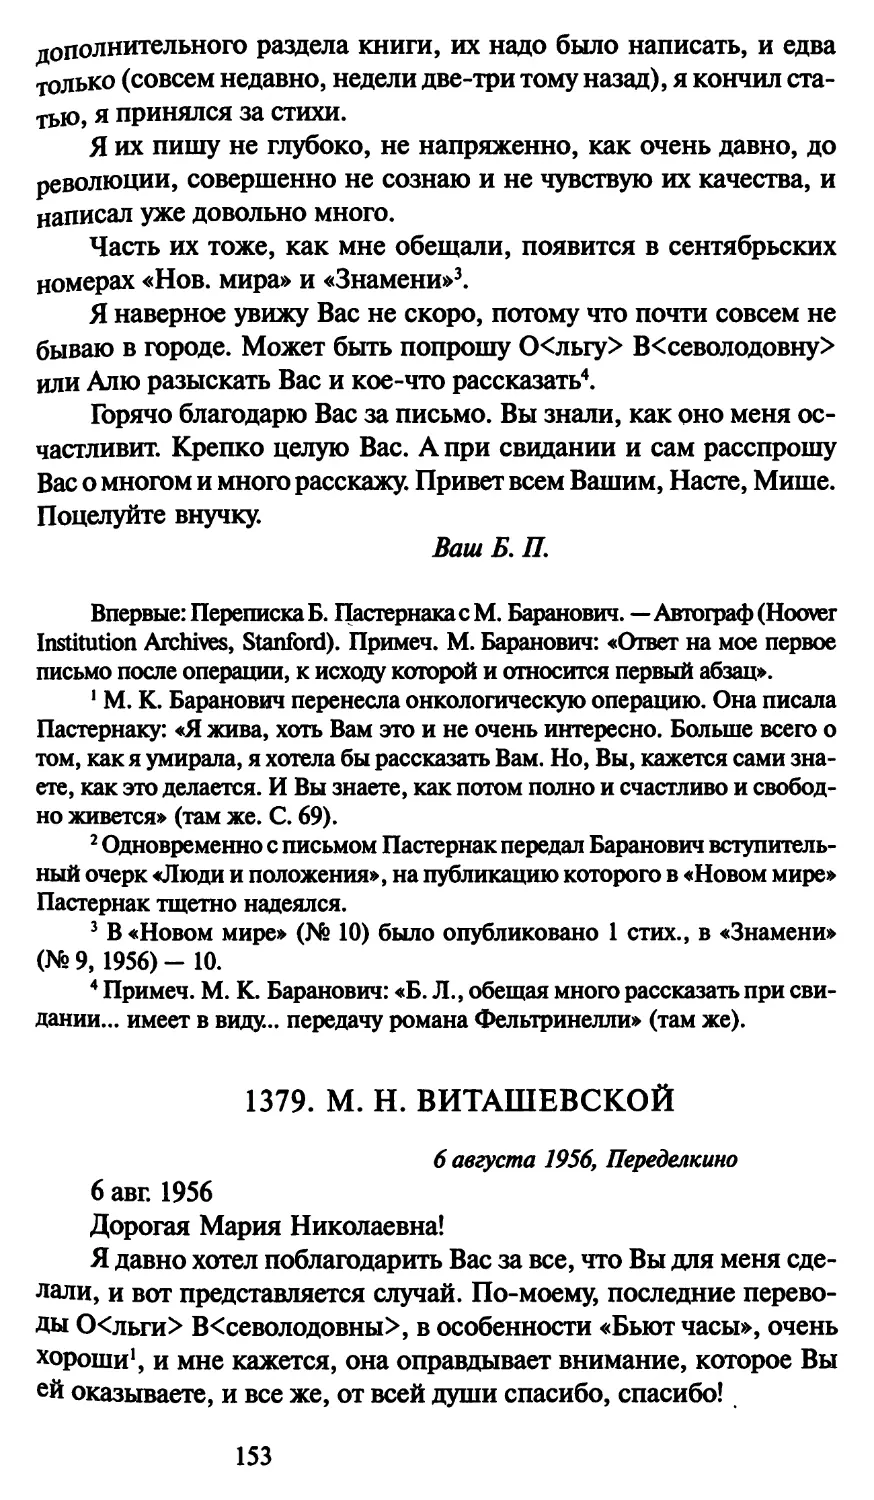 1379. М. Н. Виташевской 6 августа 1956